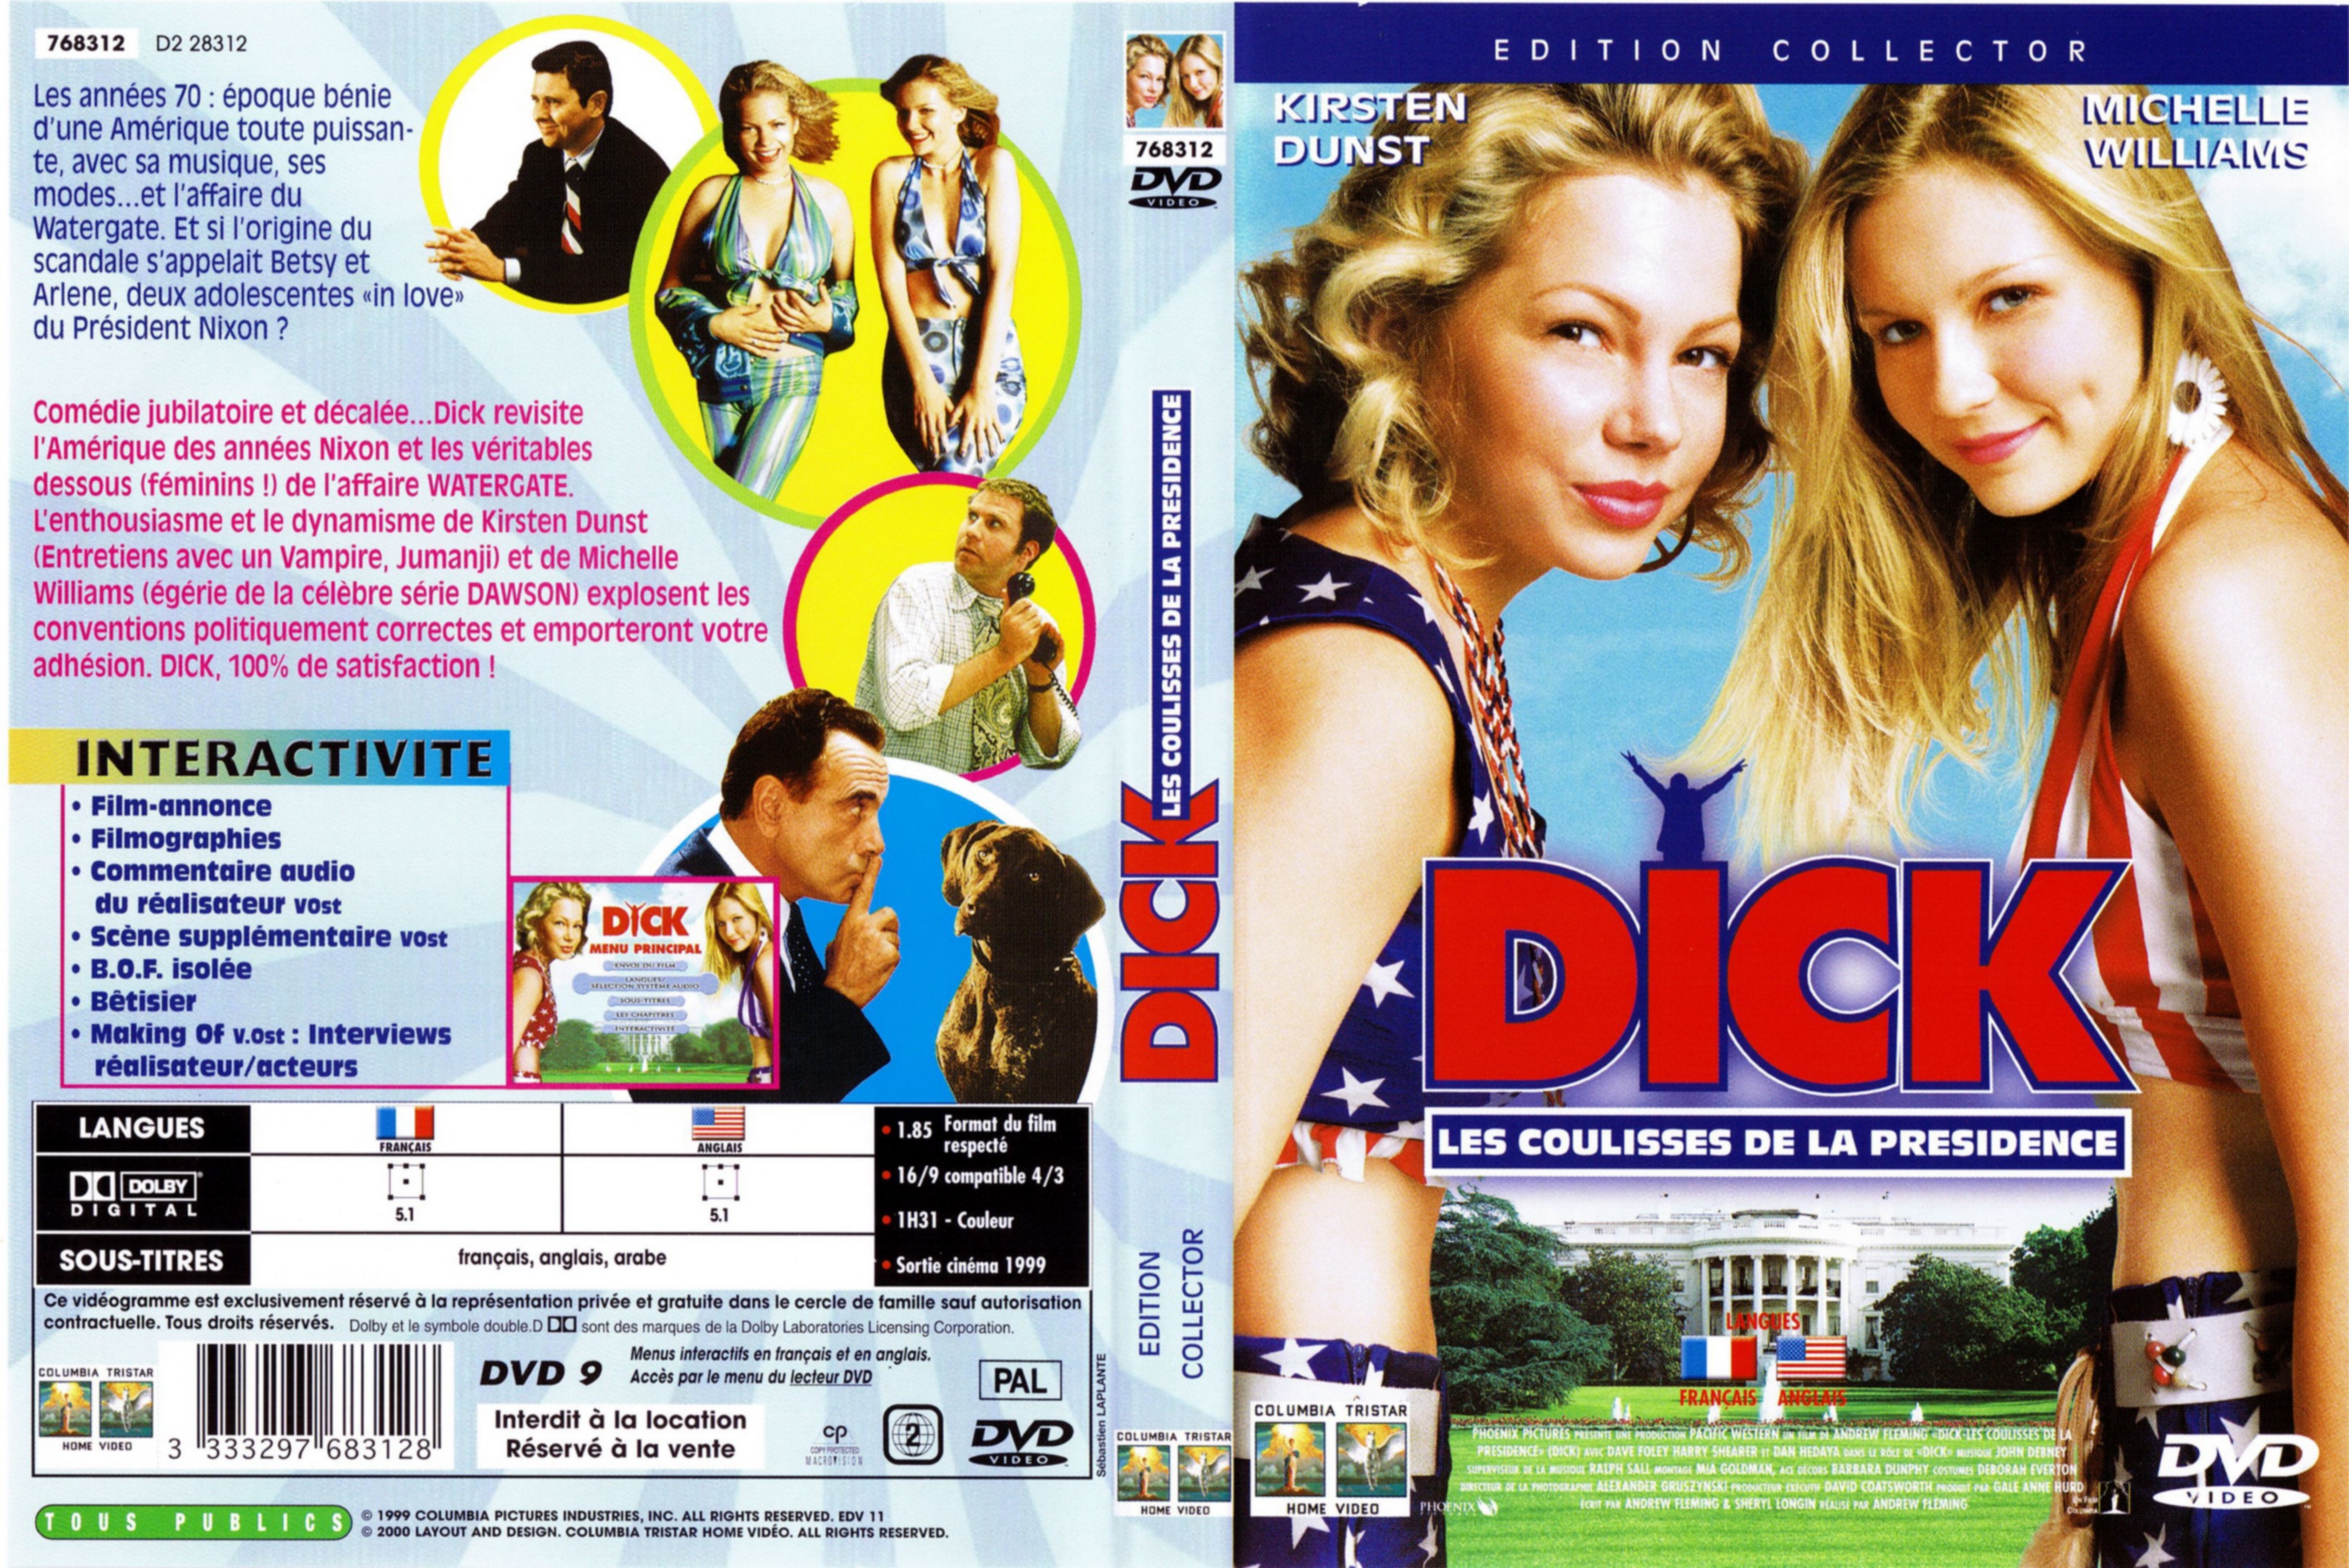 Jaquette DVD Dick les coulisses de la presidence